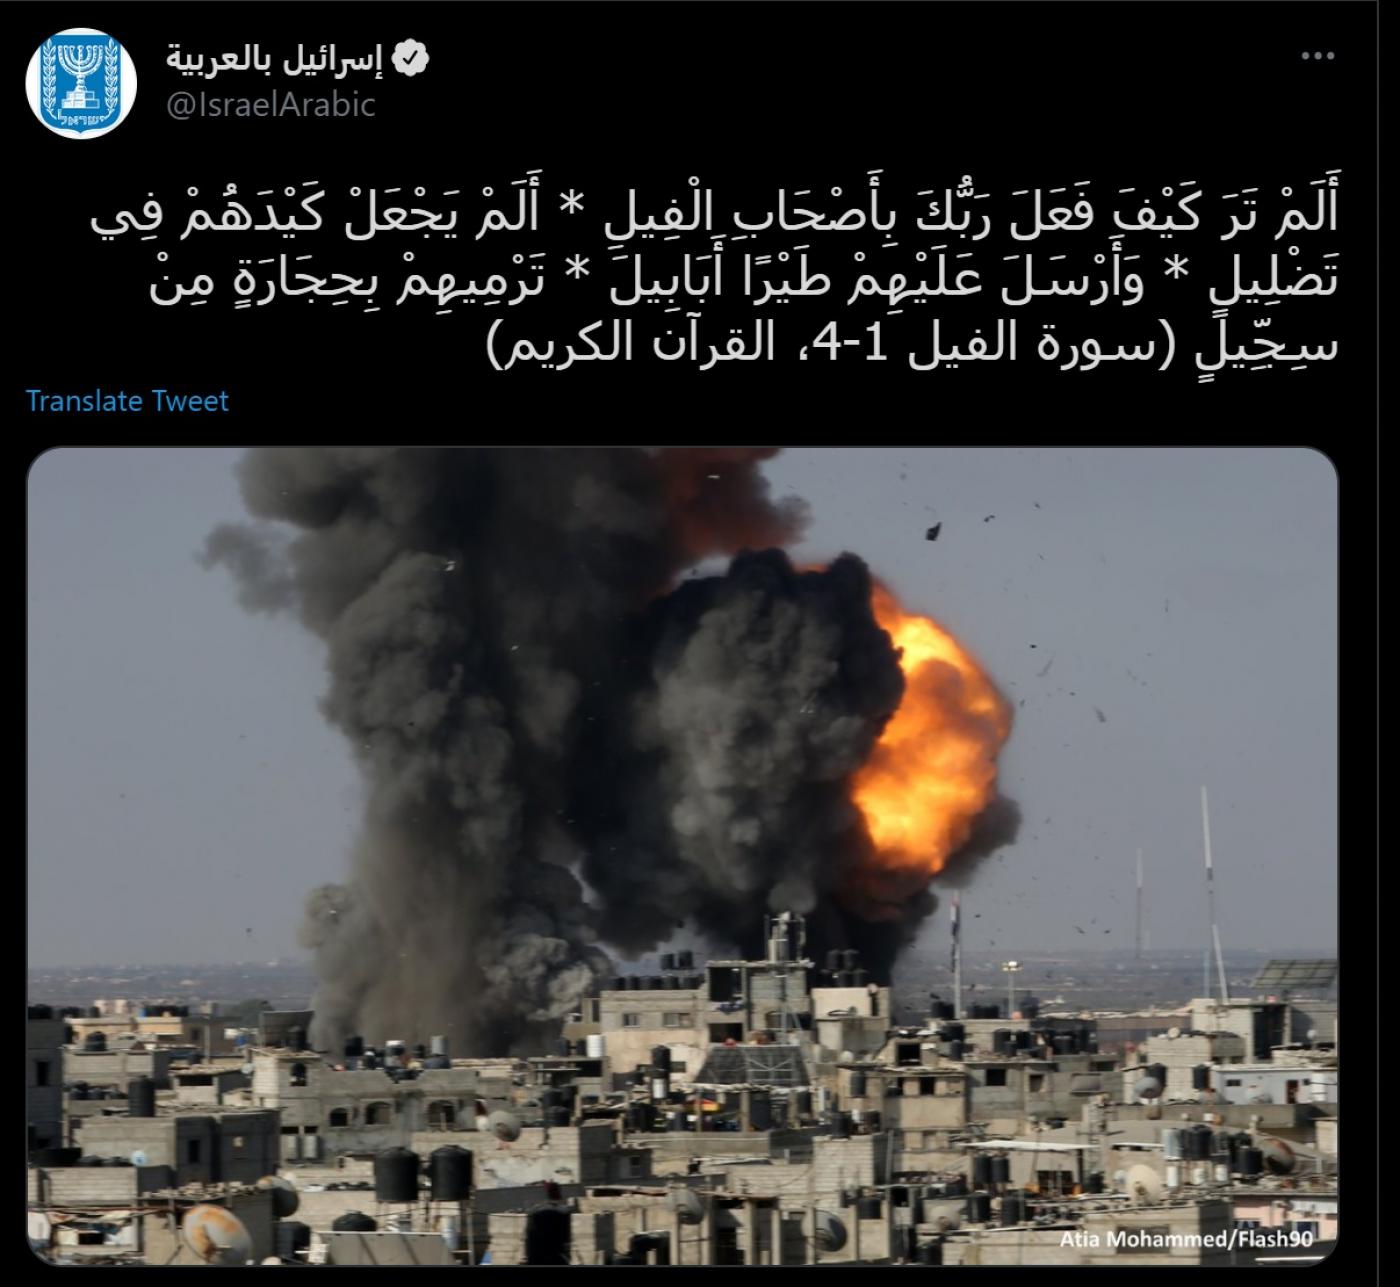 Le compte Twitter officiel d’Israël publie des versets coraniques semblant justifier le bombardement de la bande de Gaza assiégée (capture d’écran/Twitter)